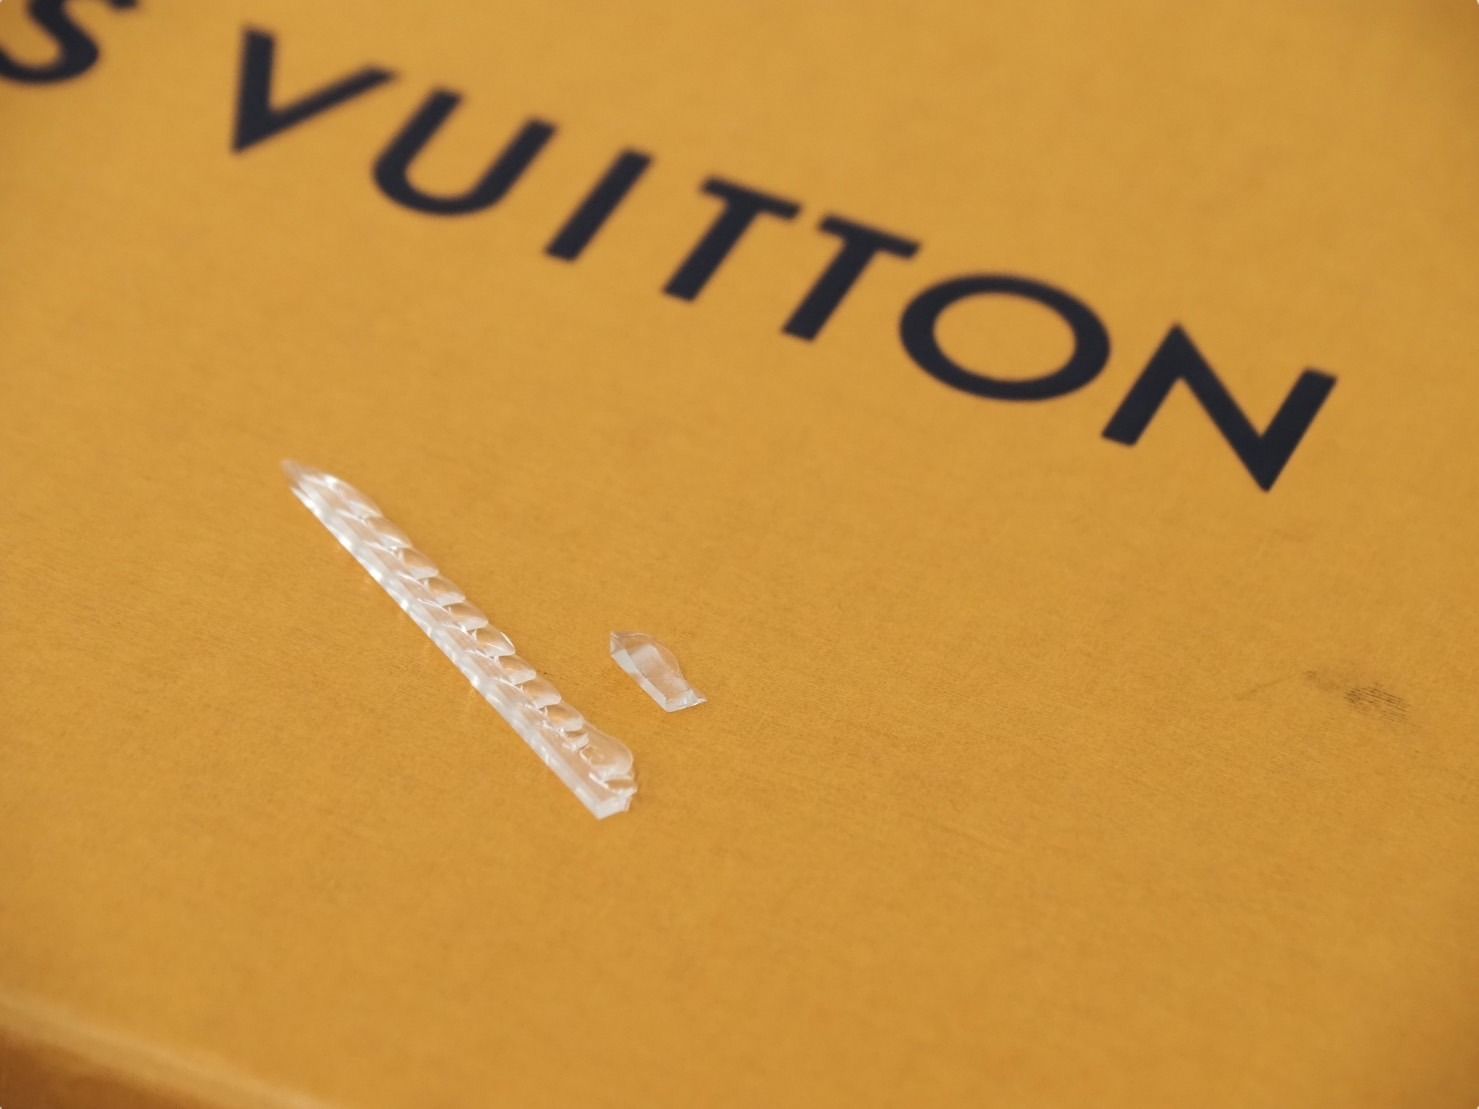 LOUIS VUITTON ルイヴィトン 靴下 雑貨 ショセット・セットアーカイブ ソックス MP3136 ゴールド 美品  54221